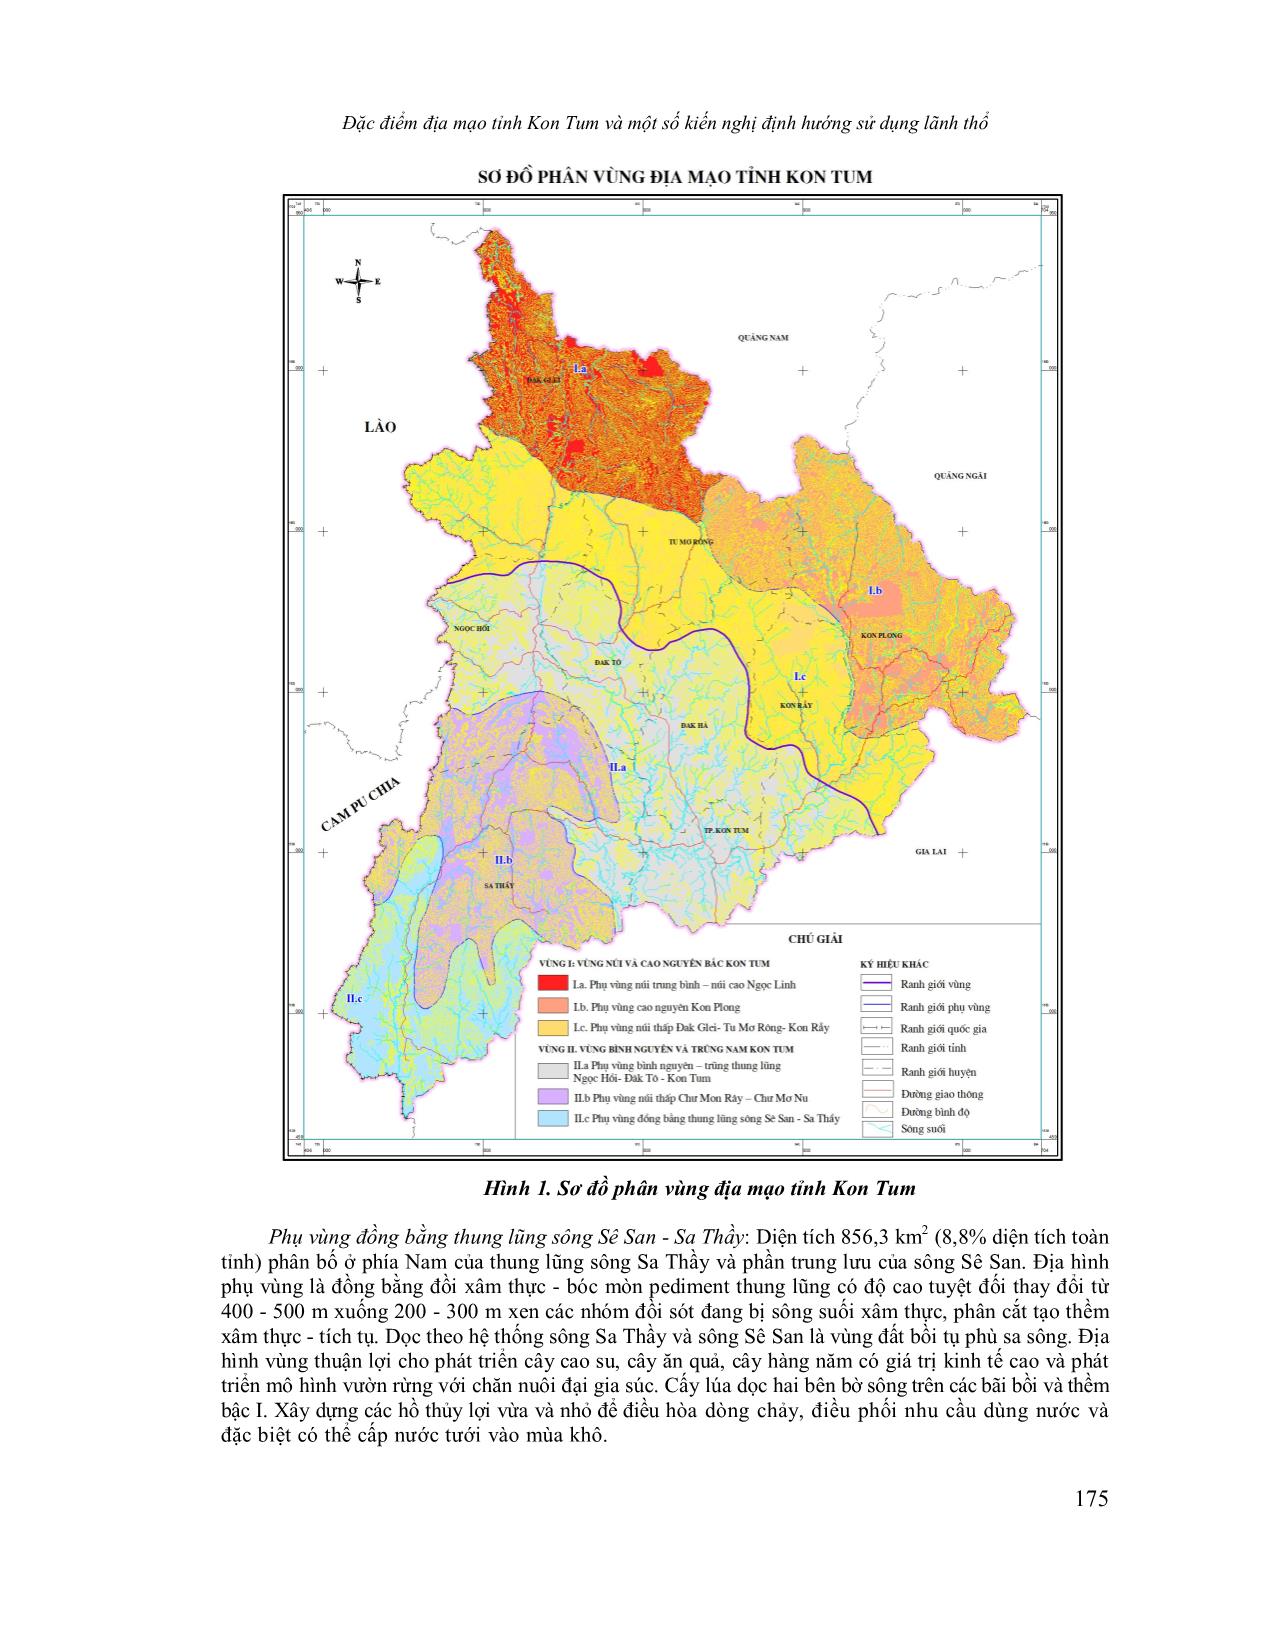 Đặc điểm địa mạo tỉnh Kon Tum và một số kiến nghị định hướng sử dụng lãnh thổ trang 8